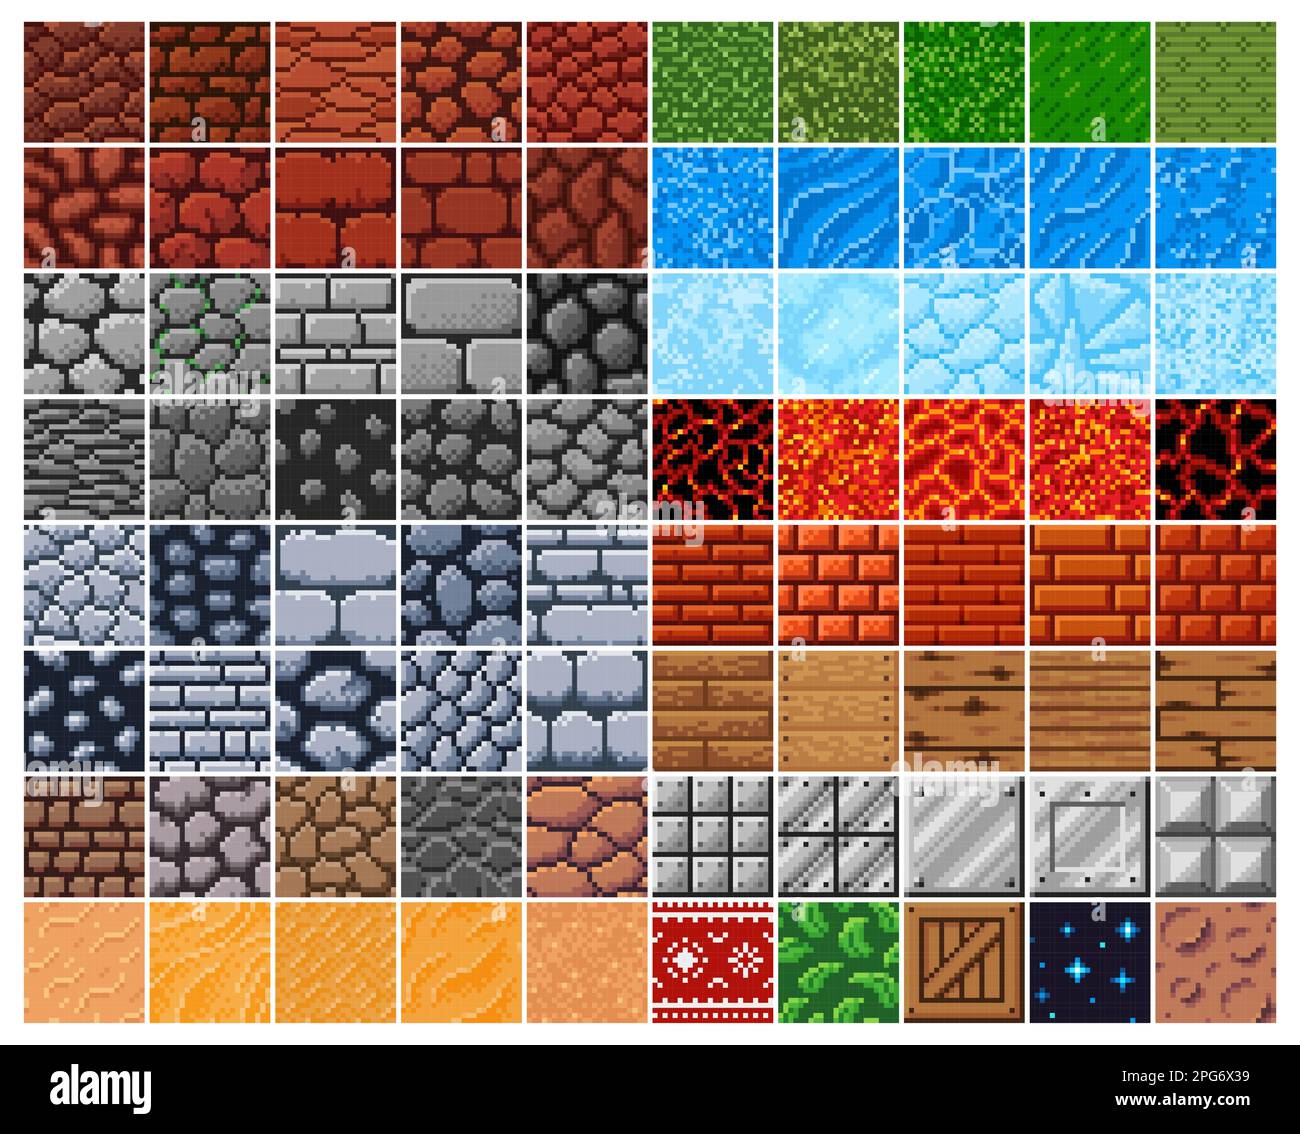 Retro-Oberflächenmuster mit 8 Bit Pixeln, Stein-, Ziegel- und Holzkiste, Sand- und Metallvektorfliesen. Stein, Gras, Wasser, Eis und Lava in 8bit Pixel, Muster Stock Vektor